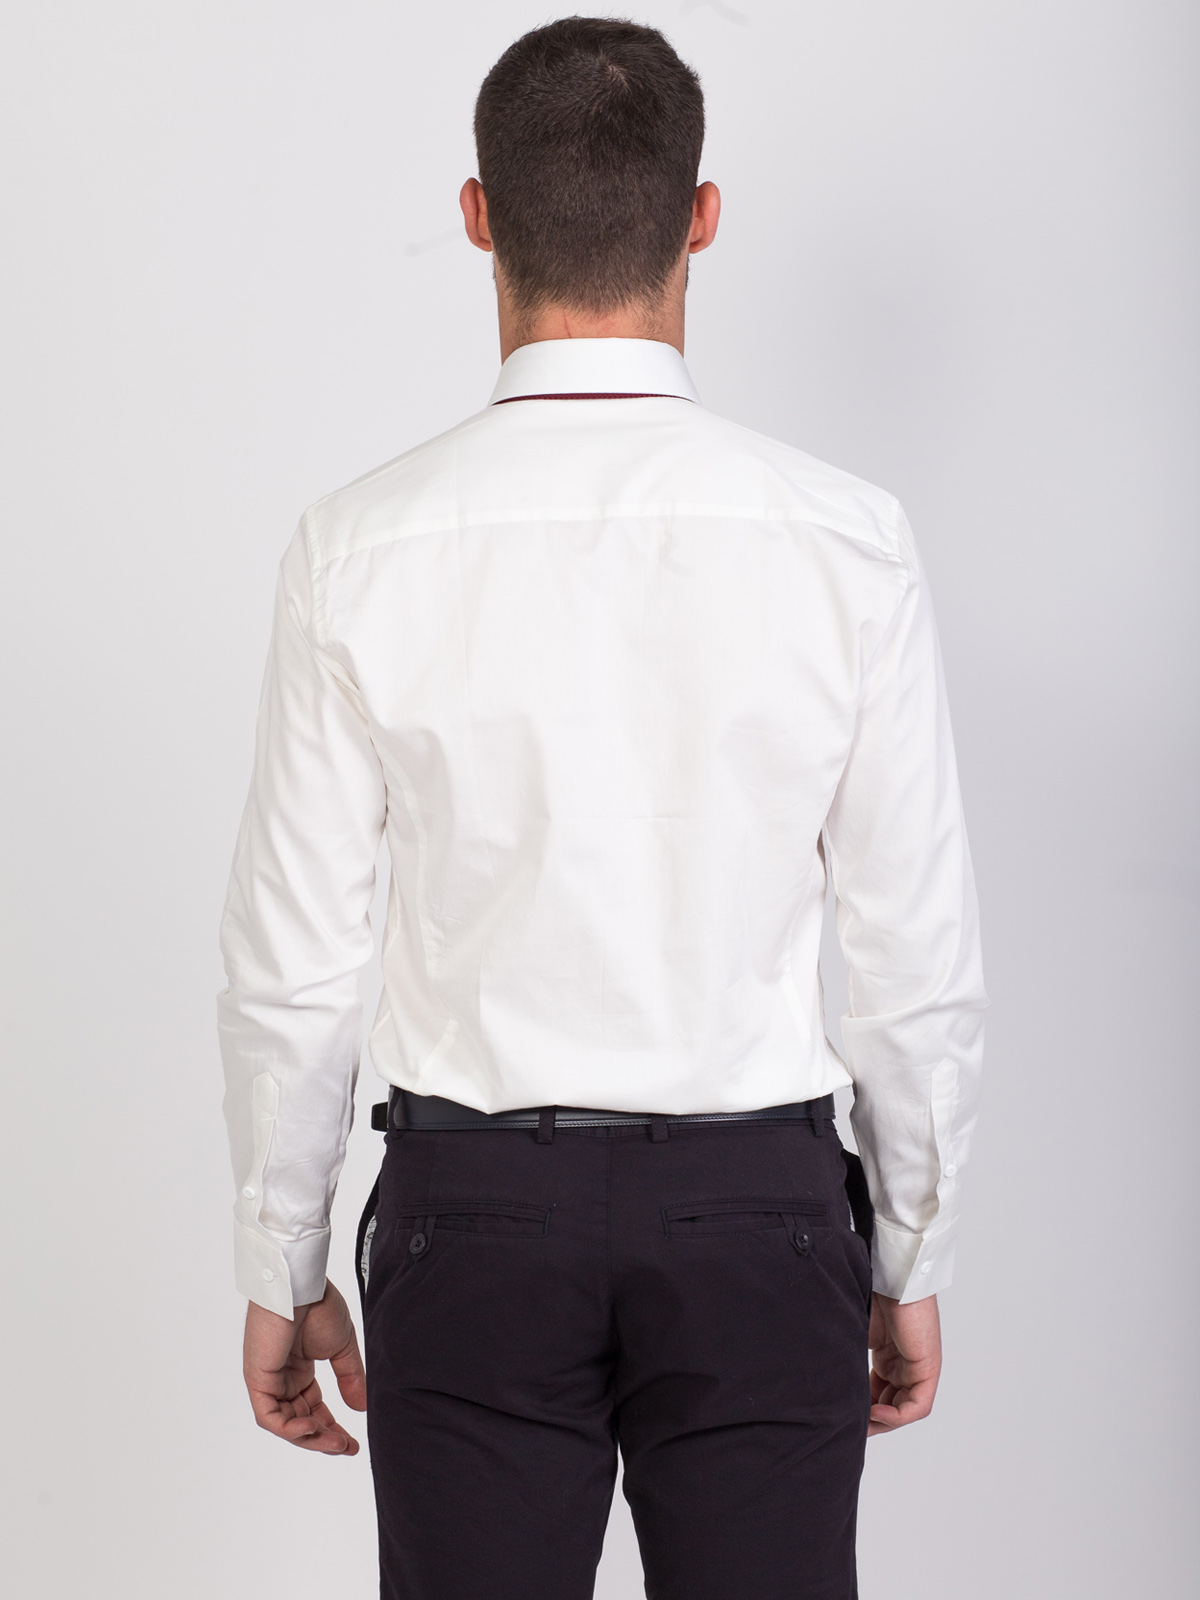 Класическа риза в бяло - 21433 29.00 лв img3